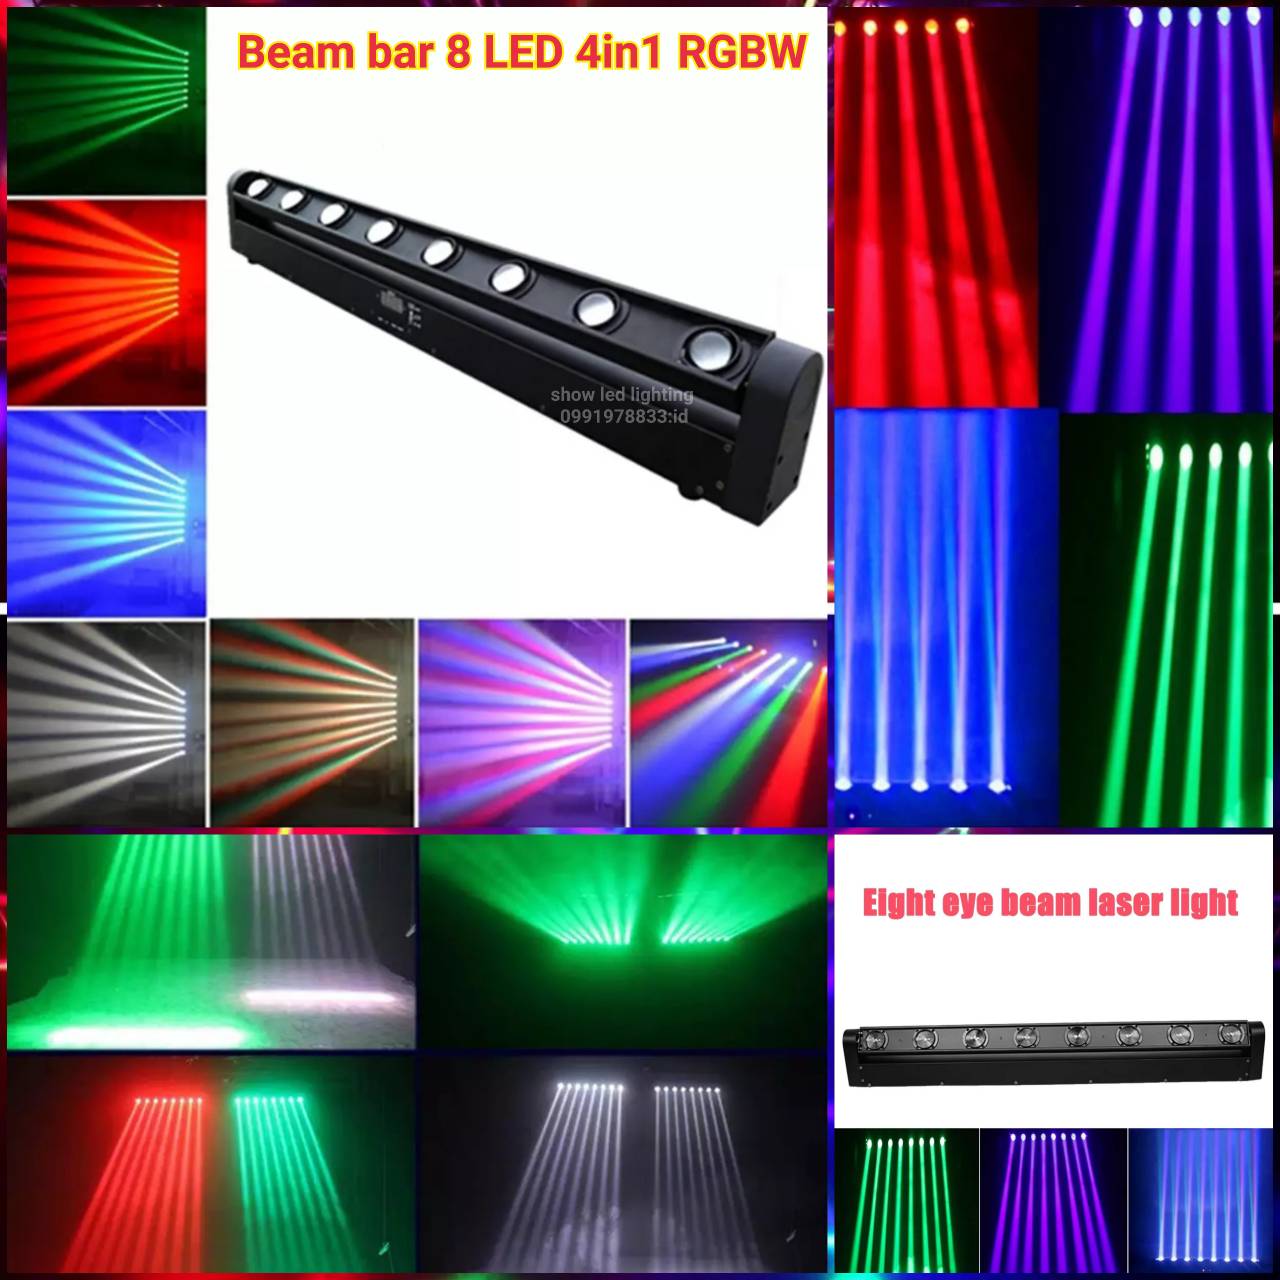 ไฟดิสโก้ Beam bar led 4in1rgbw PARTY LIGHT ไฟดิสโก้ ไฟดิสโก้เทค ไฟ Laser light ไฟเทค ปาร์ตี้ ไฟเวที